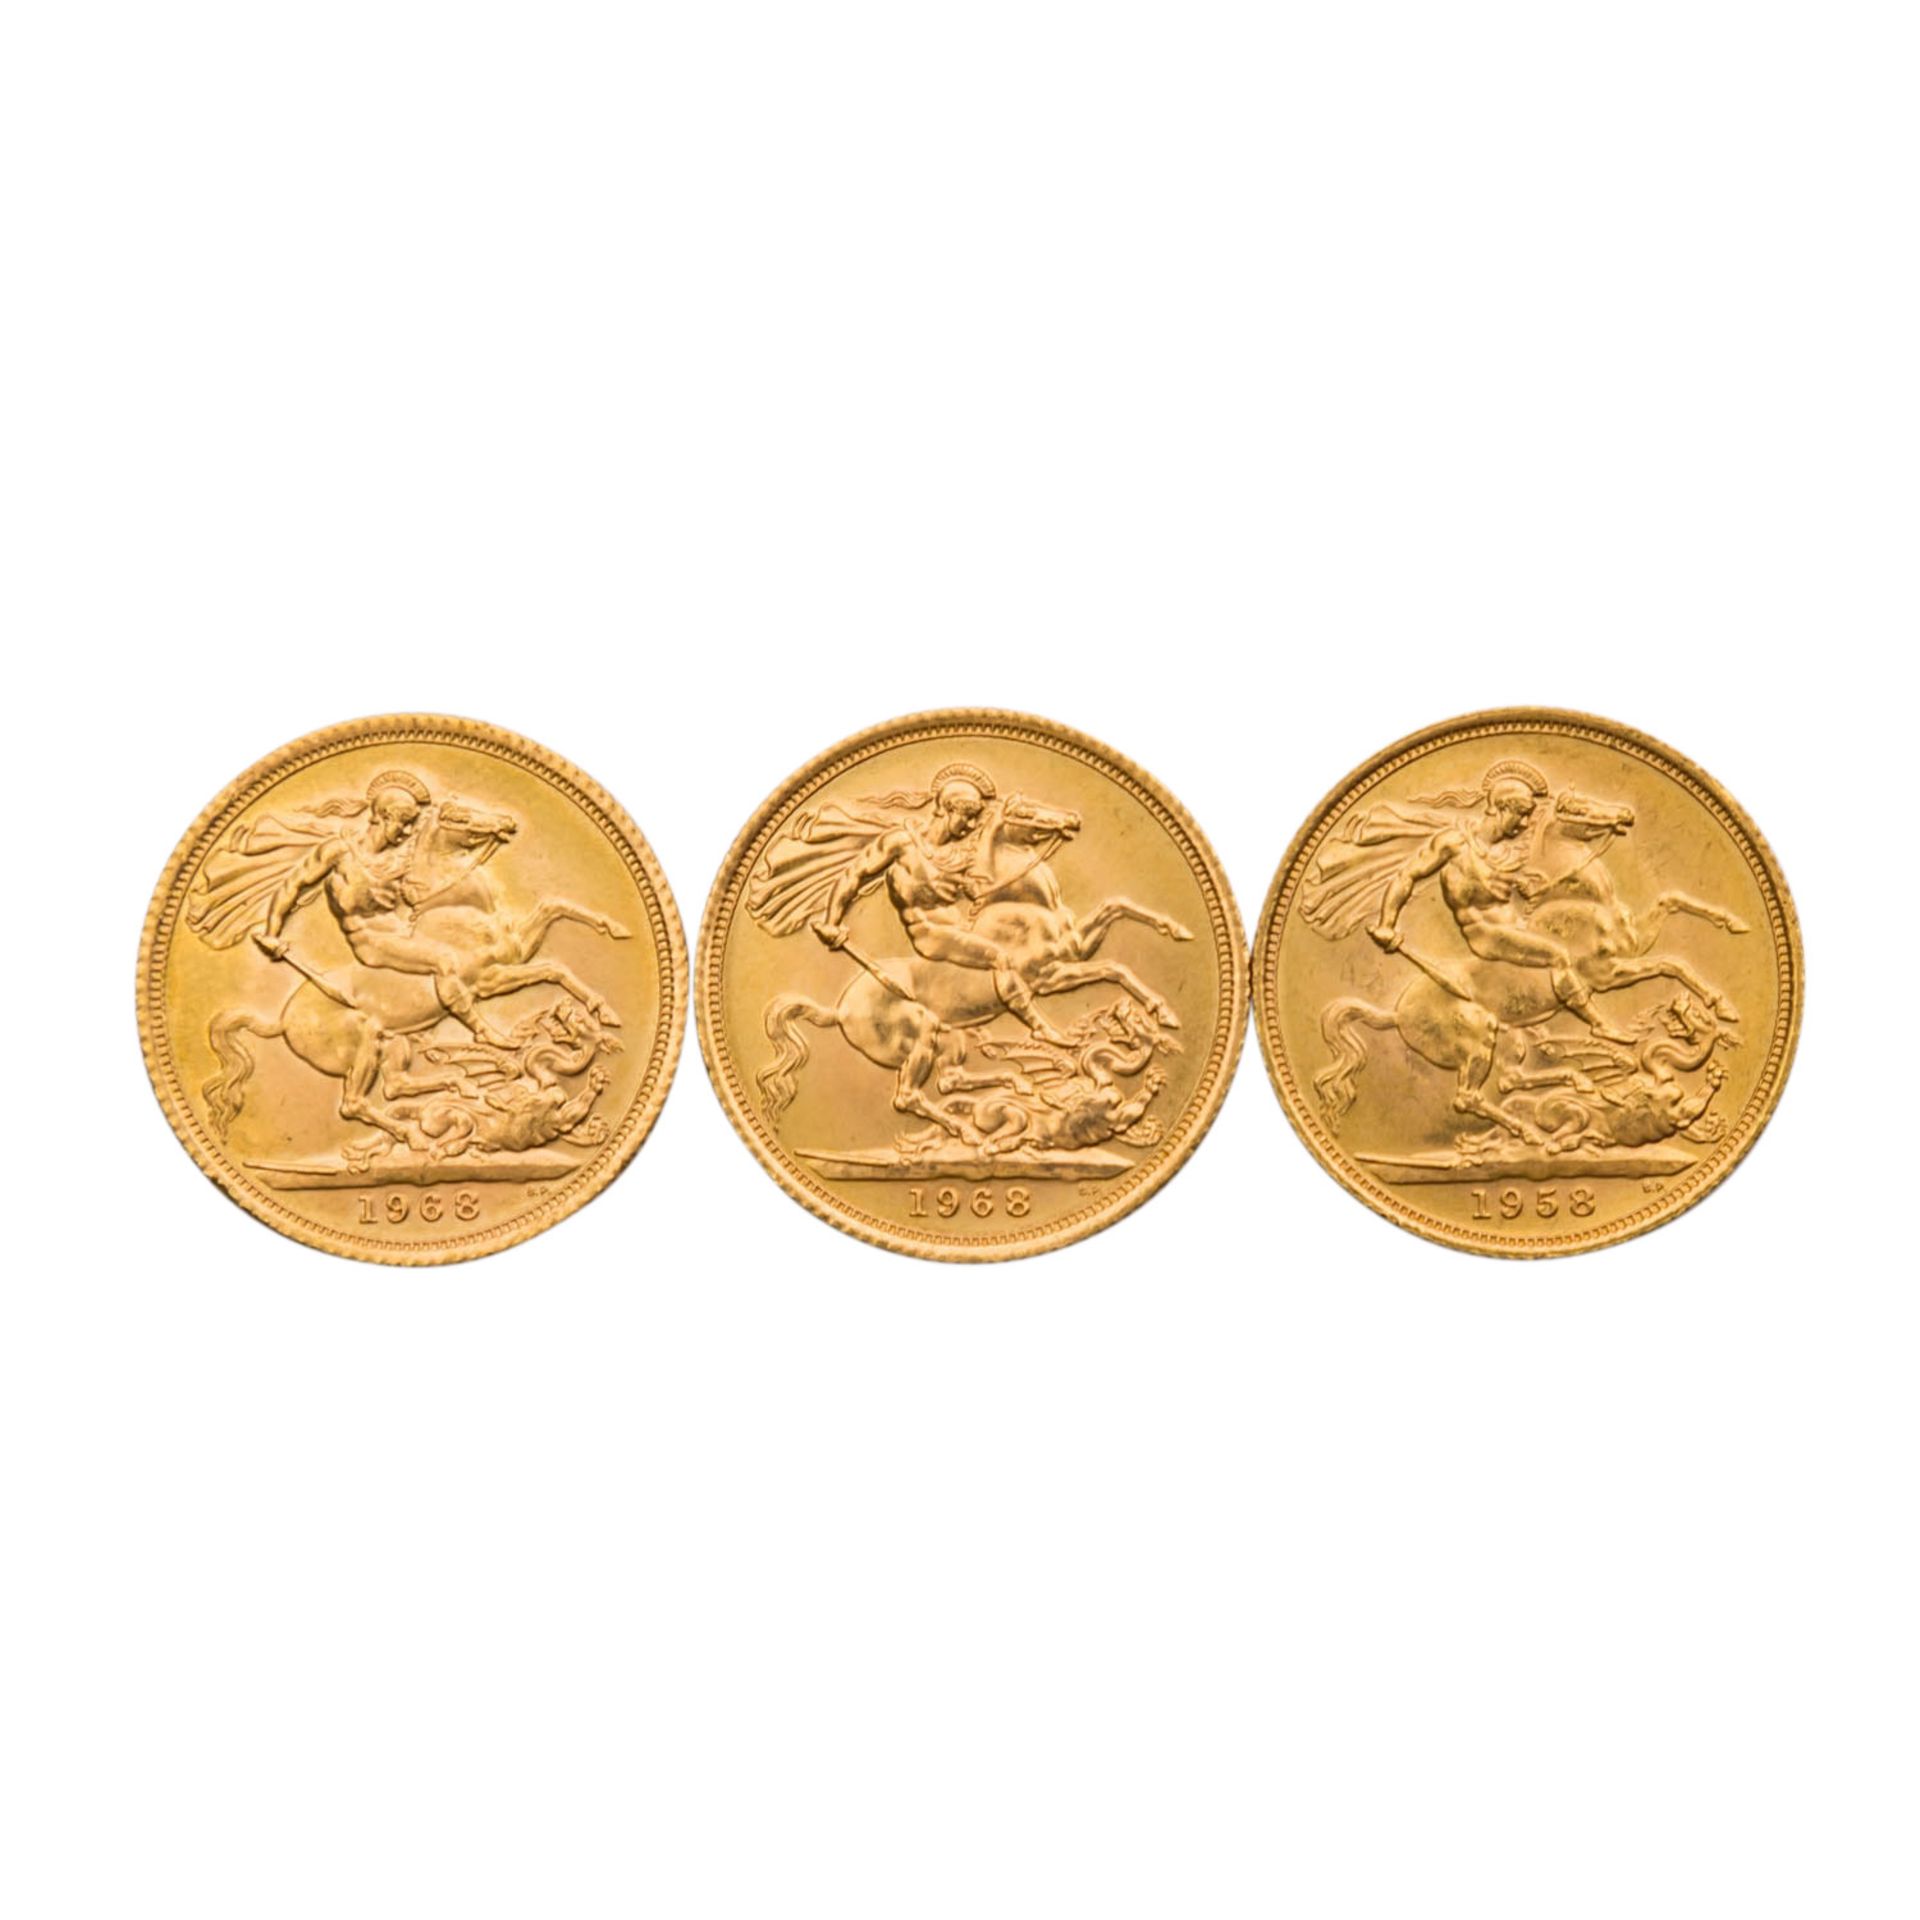 Goldenes Investmentkonvolut GB -3 x GB - 1 Sovereign 1958/1968 (2x), Elizabeth II., mit Schleife, - Bild 2 aus 2